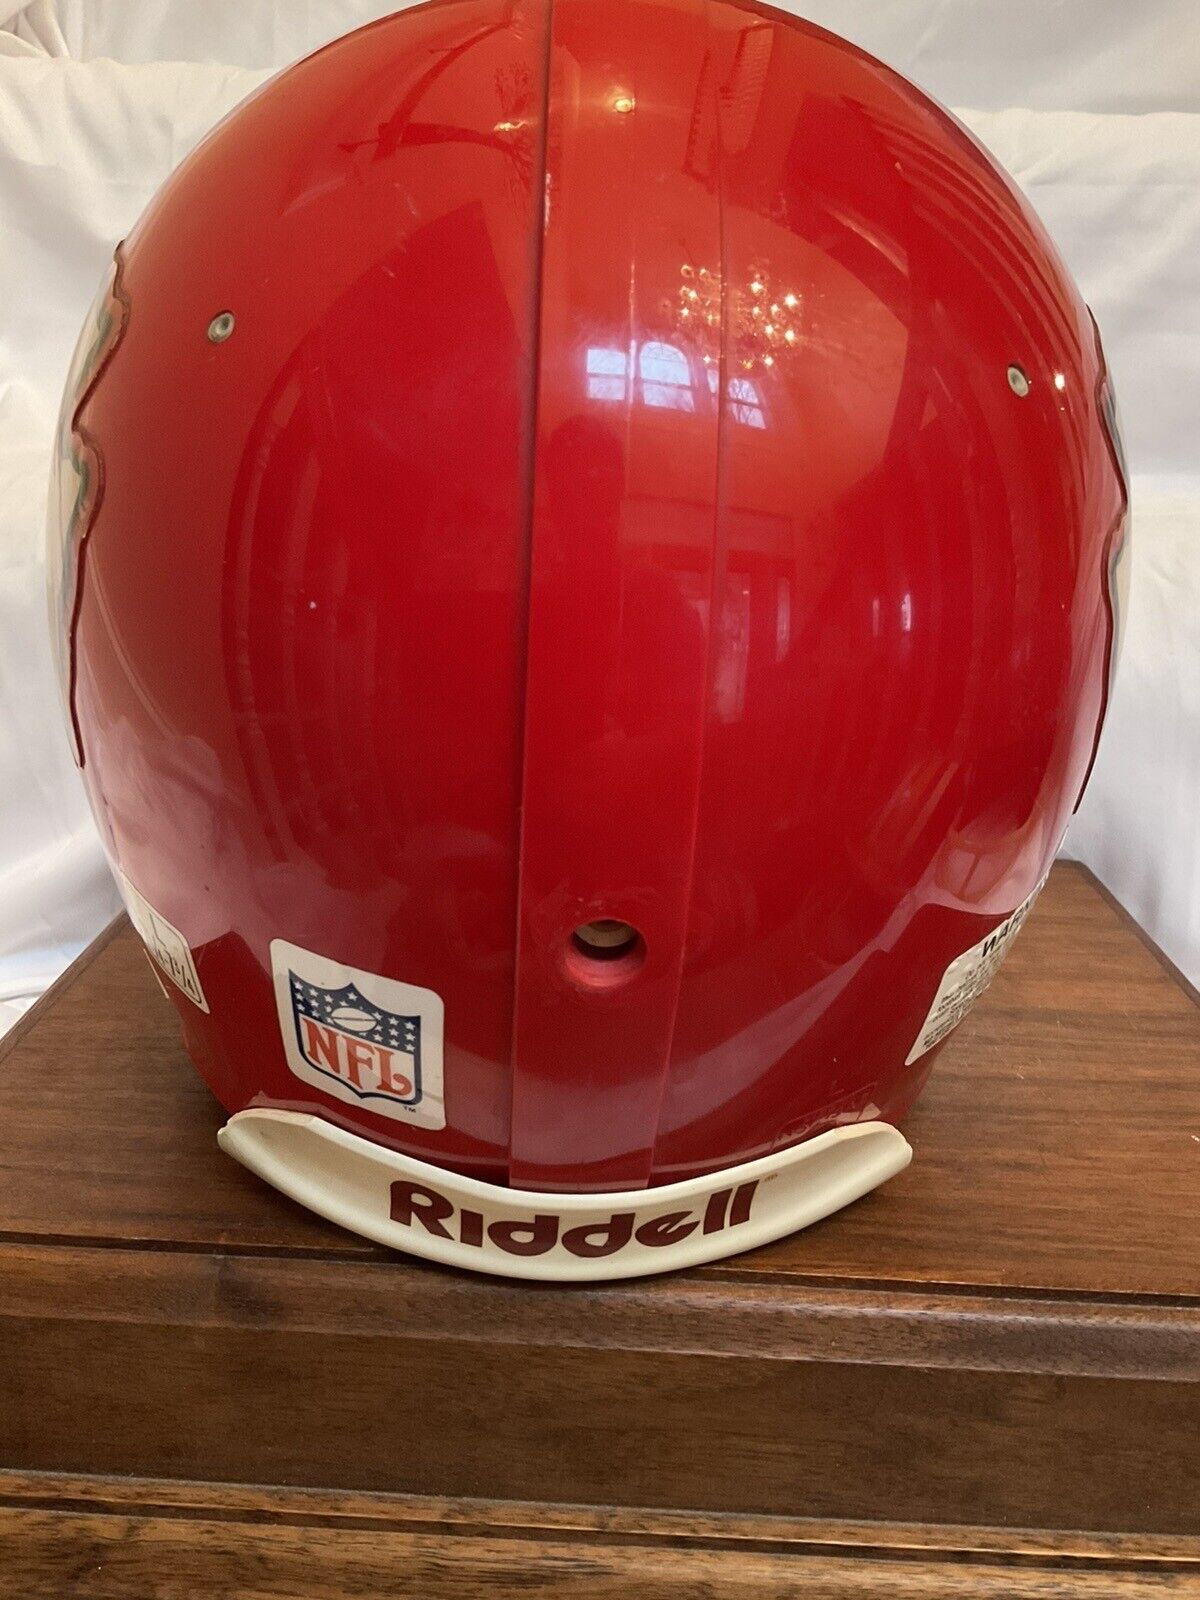 RIddell VSR-1 Football Helmet Officially Licensed Kansas City Chiefs Sports Mem, Cards & Fan Shop:Fan Apparel & Souvenirs:Football-NFL Riddell   